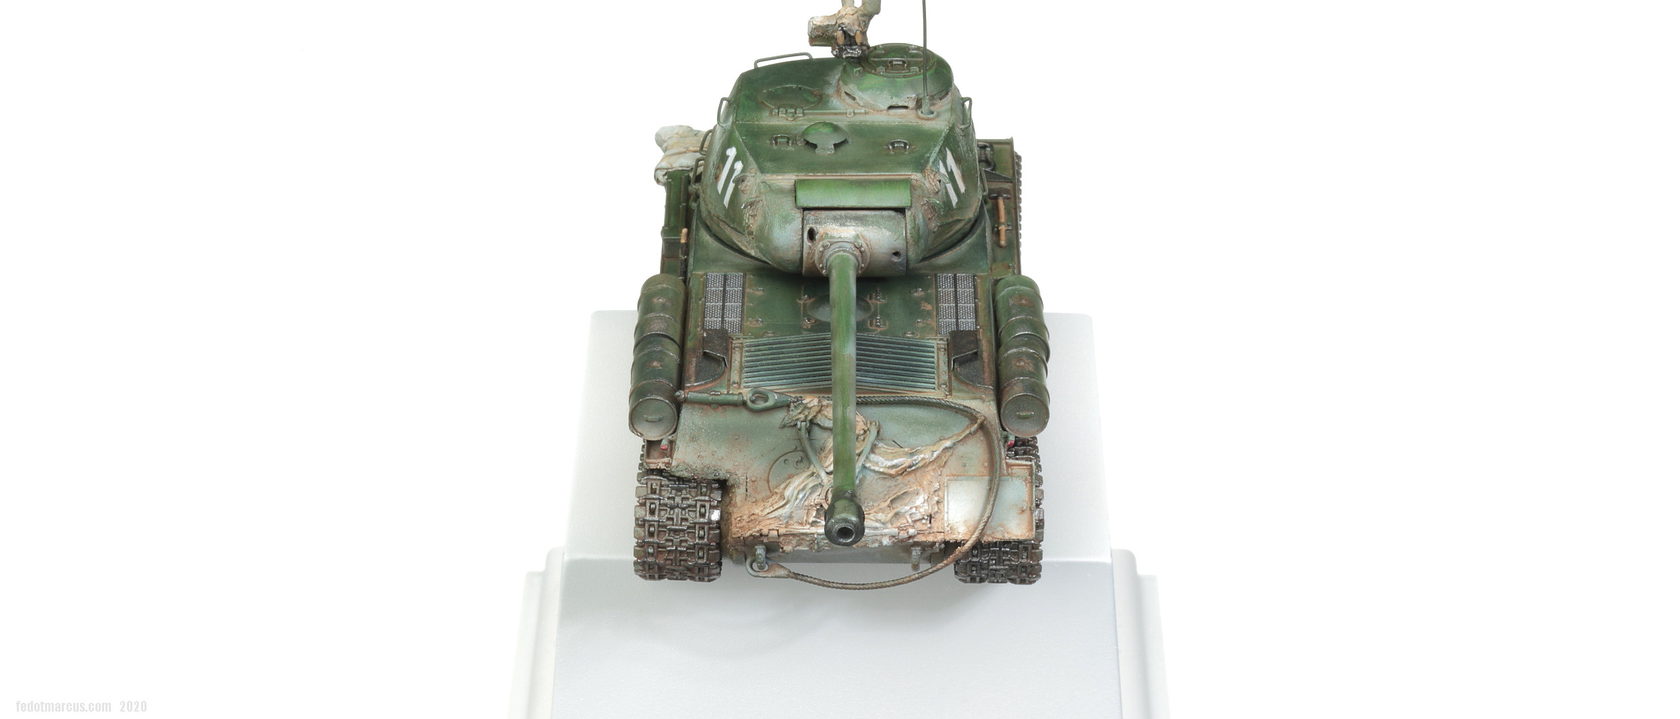 5011 Звезда 1/72 Советский тяжелый танк ИС-2. Покраска ИС-2 В 72 масштабе. Ис2-12-300 г4. Масштаб ис